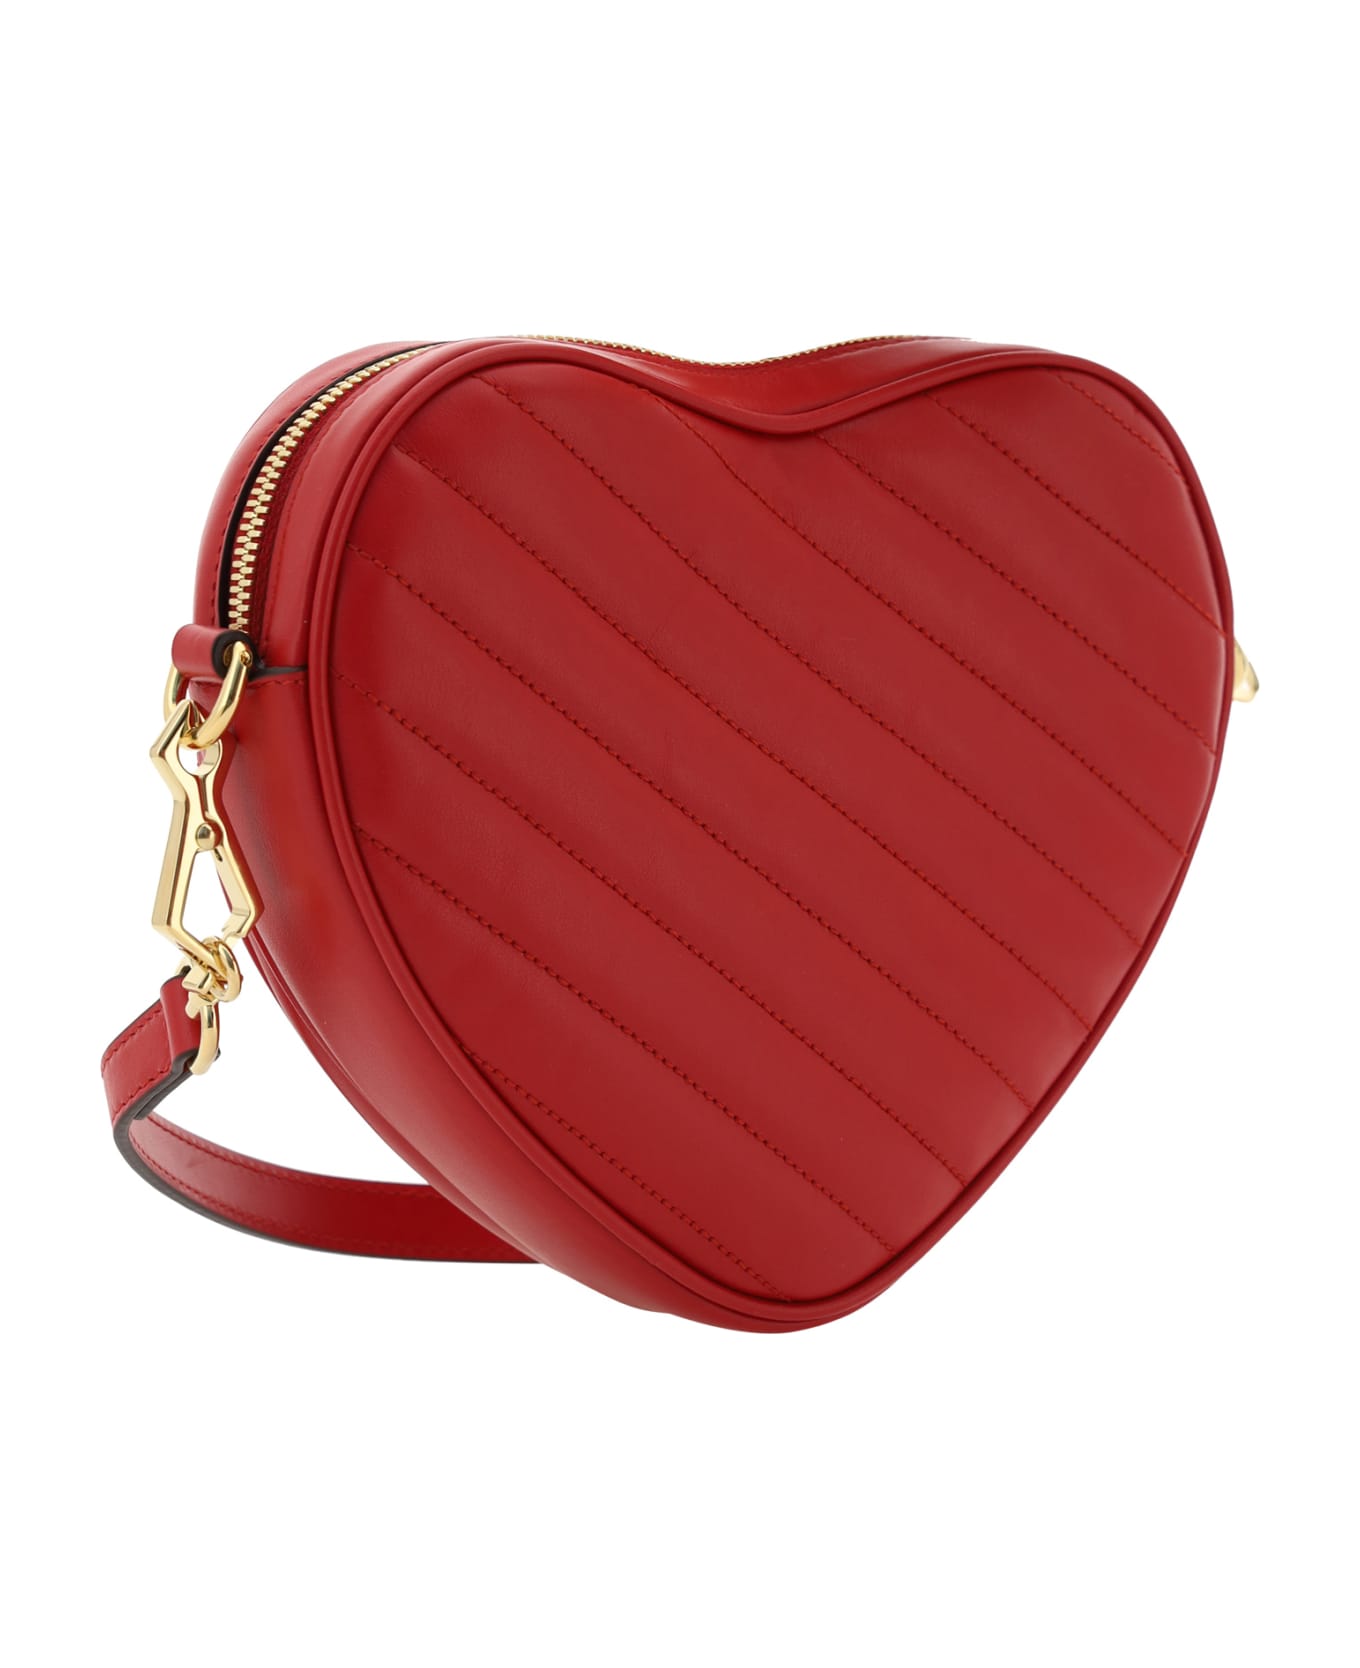 Gucci Heart Shoulder Bag